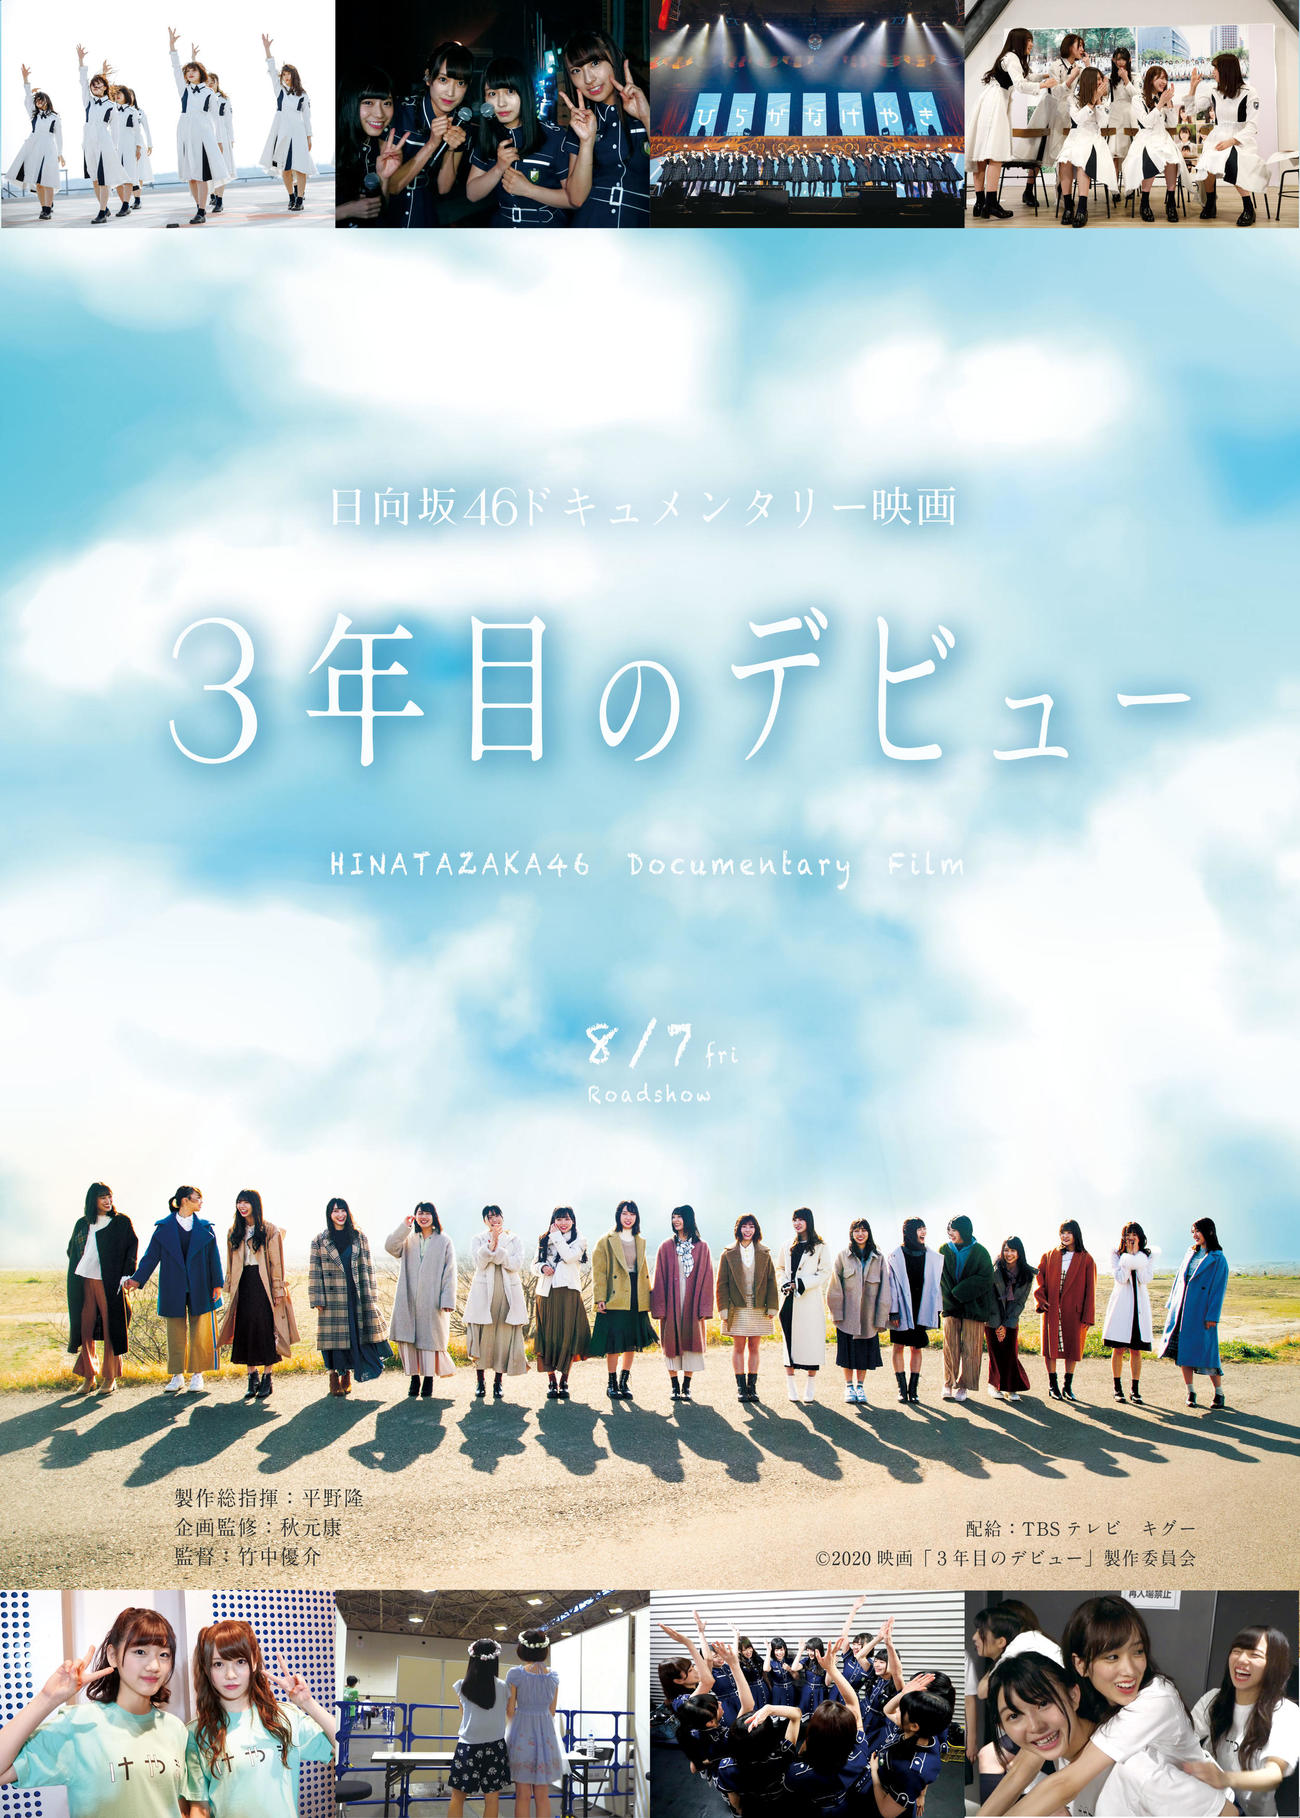 日向坂46の公開中のドキュメンタリー映画「3年目のデビュー」のポスター